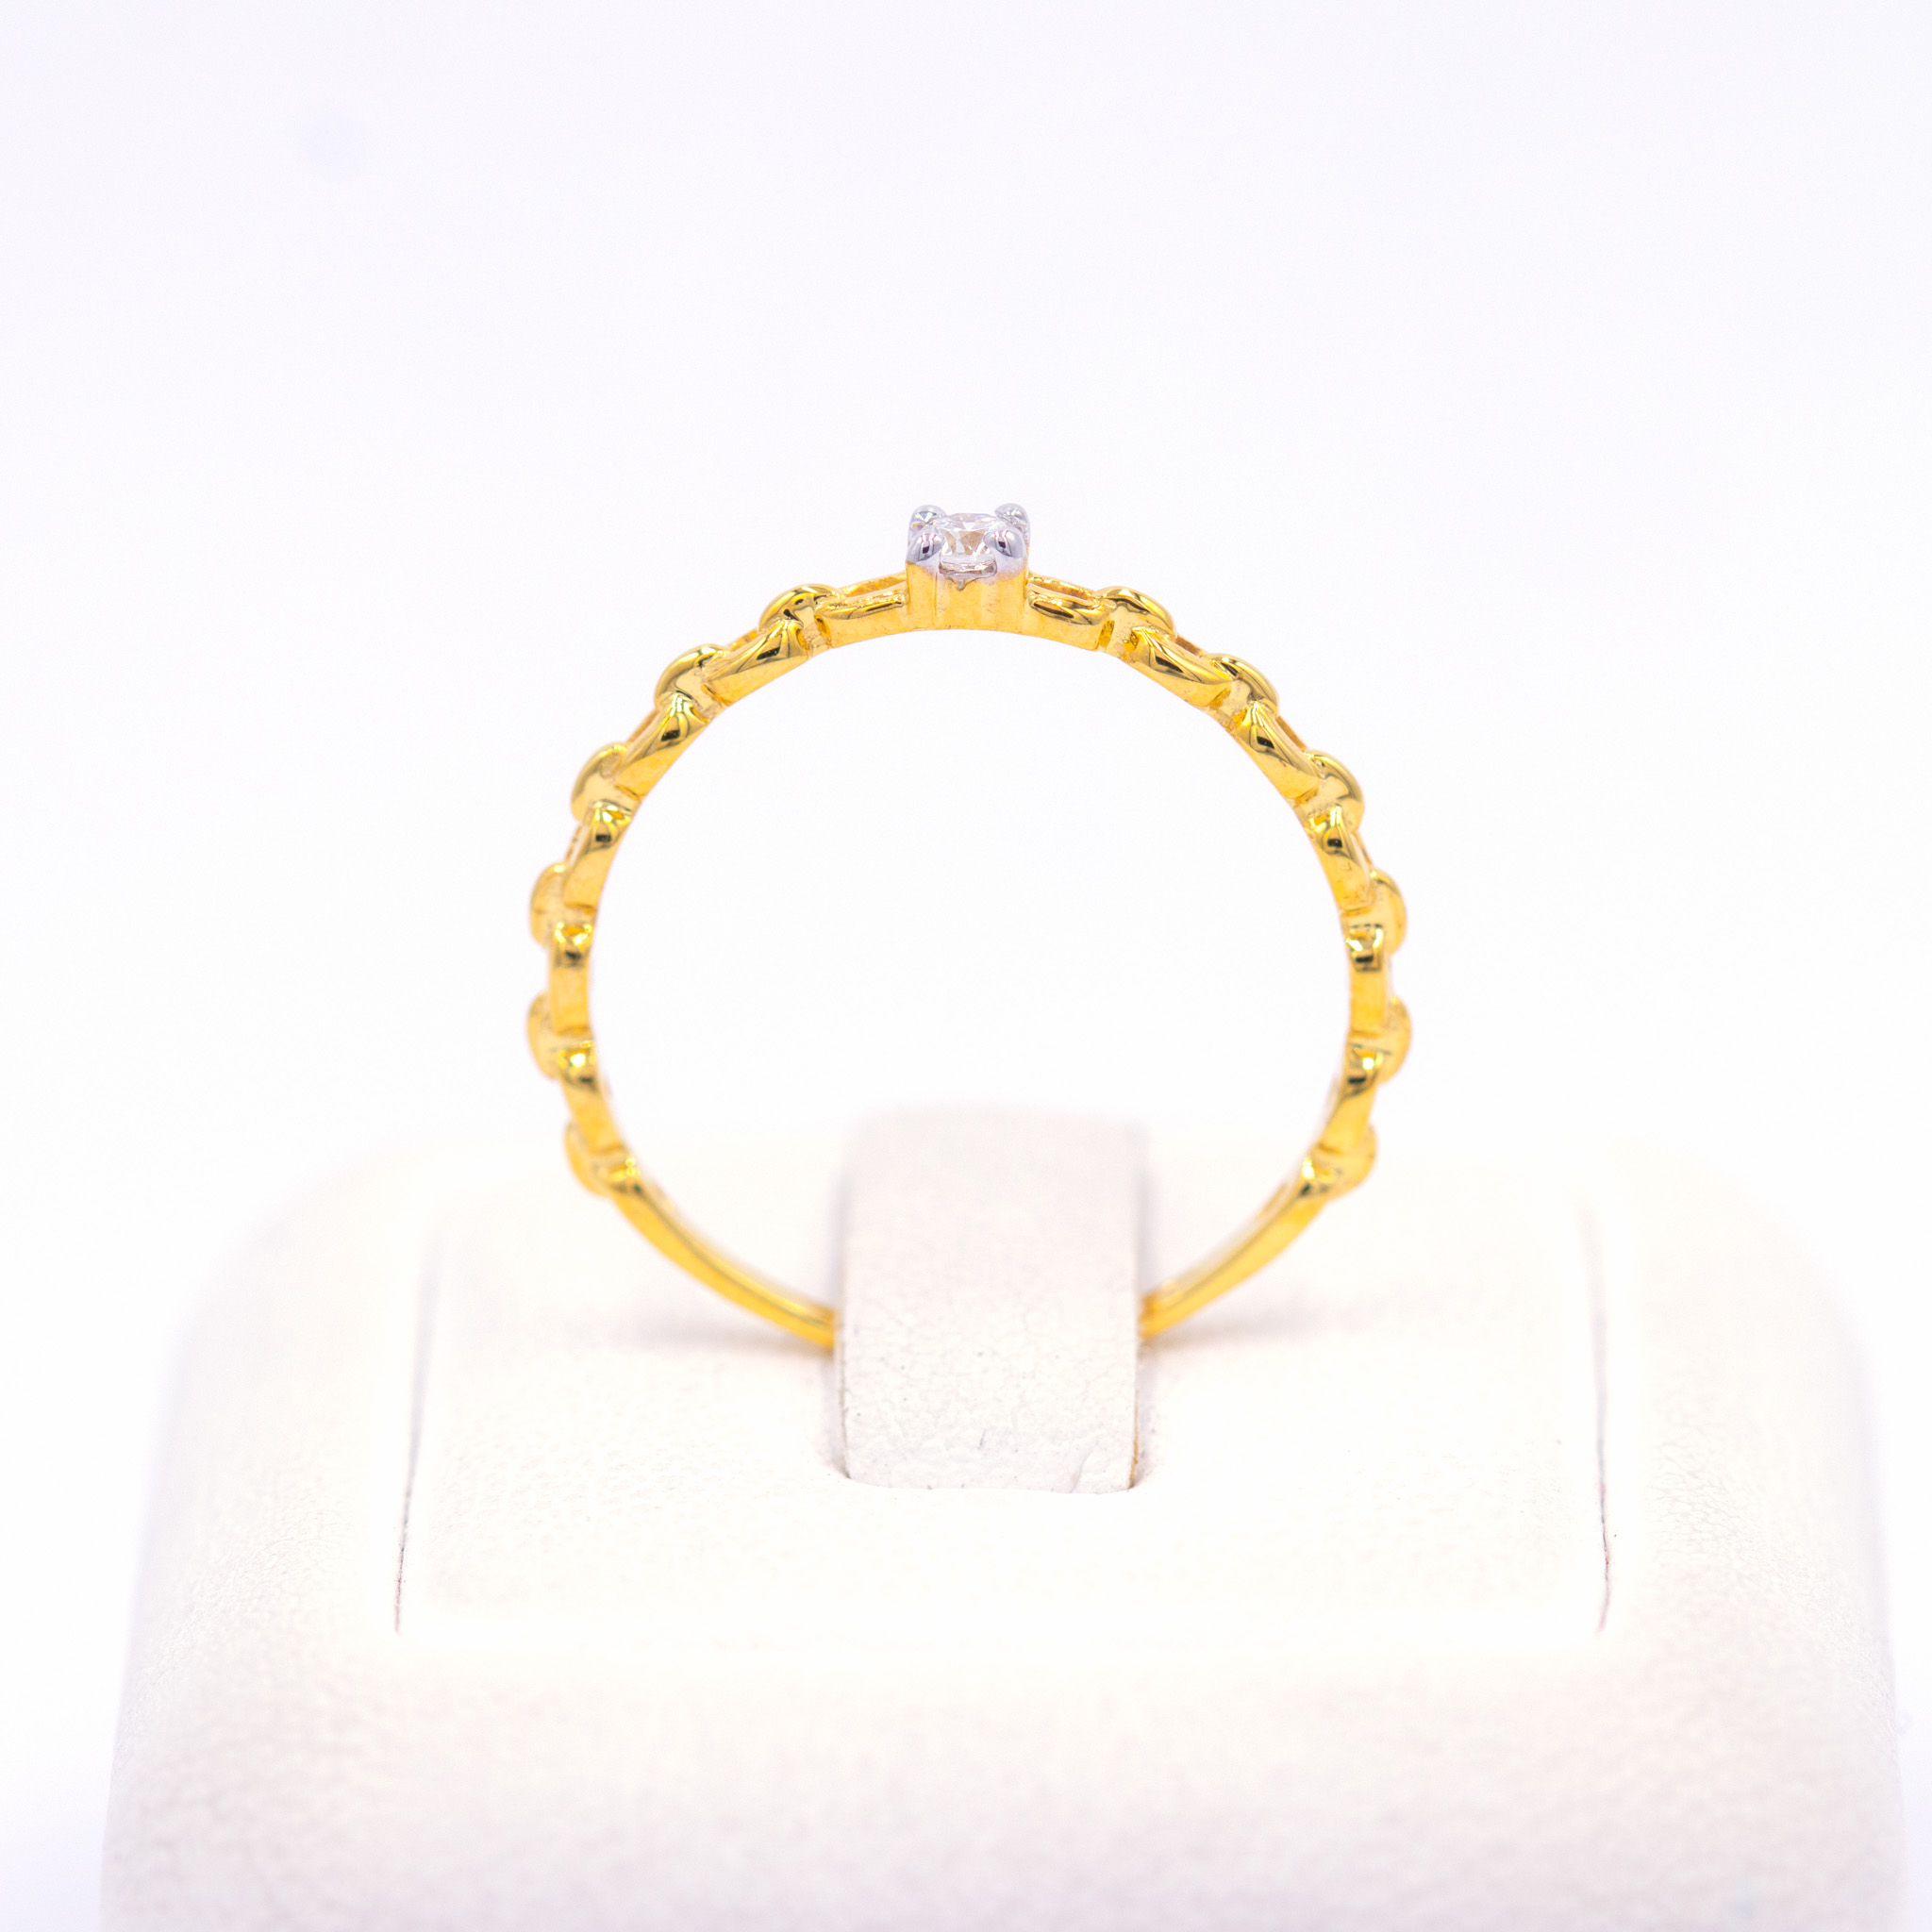 แหวนชู-เม็ดเดี่ยว-ดีไซด์เก๋ๆ-ลายโซ่-แหวนเพชร-แหวนทองเพชรแท้-ทองแท้-37-5-9k-me511